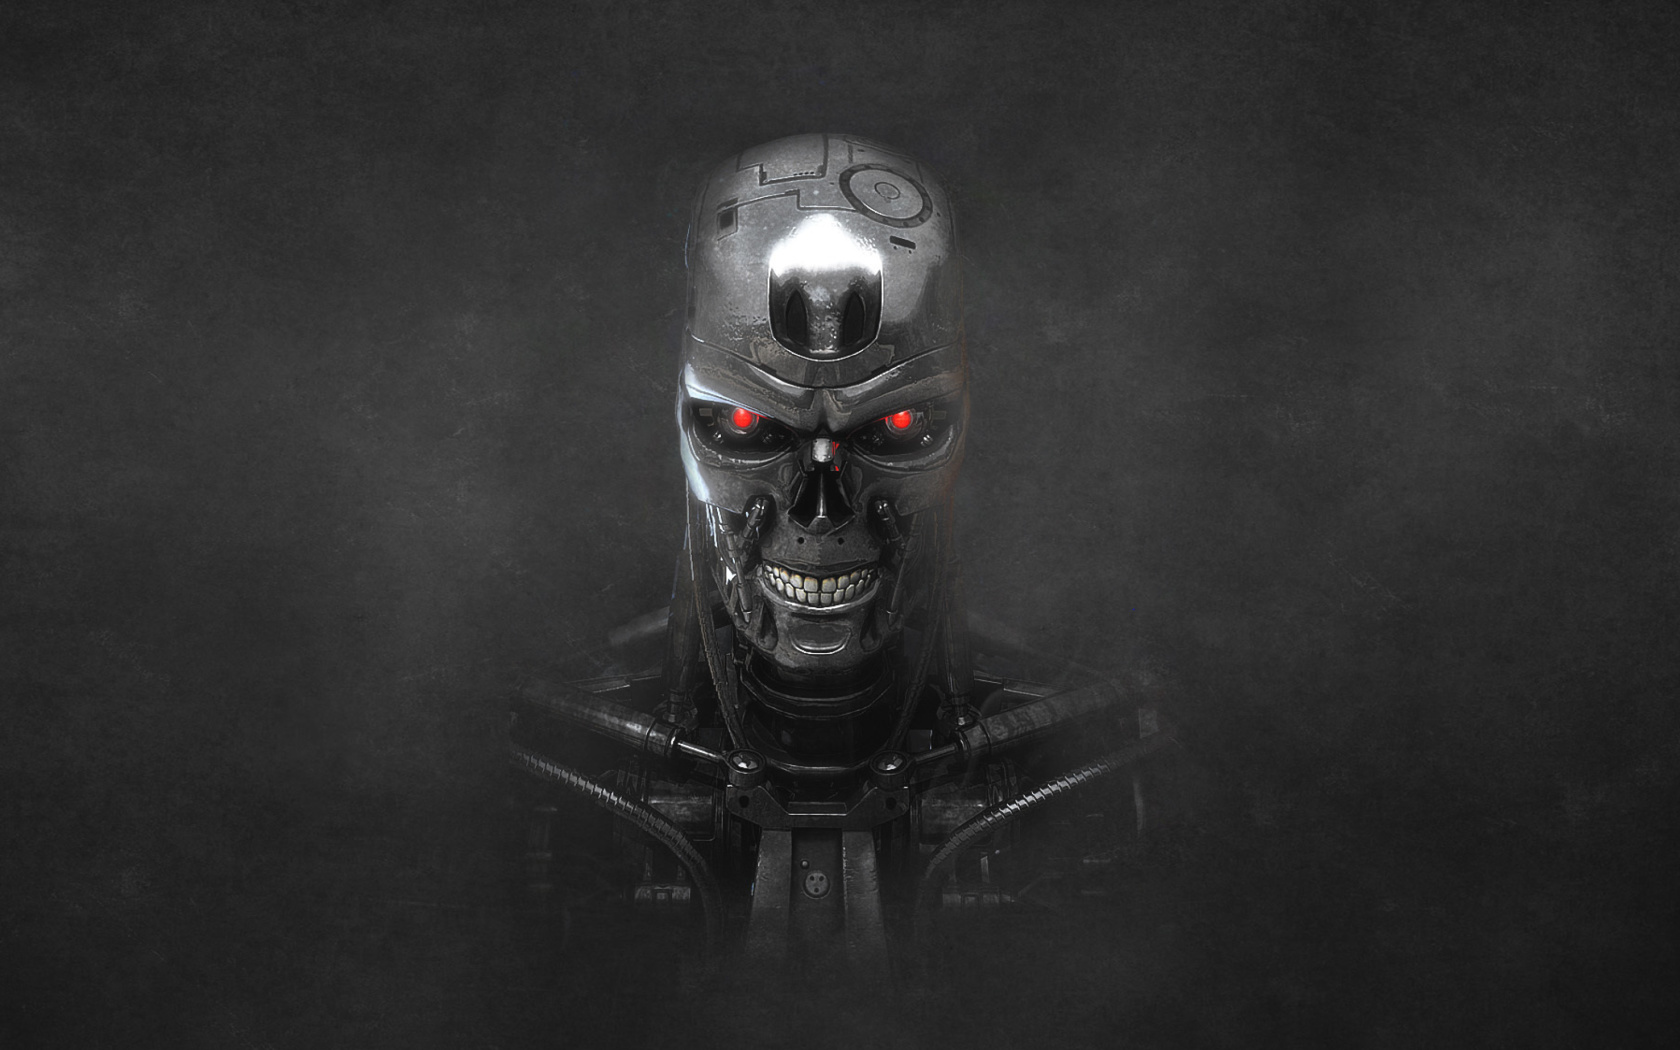 Sfondi Terminator Endoskull 1680x1050